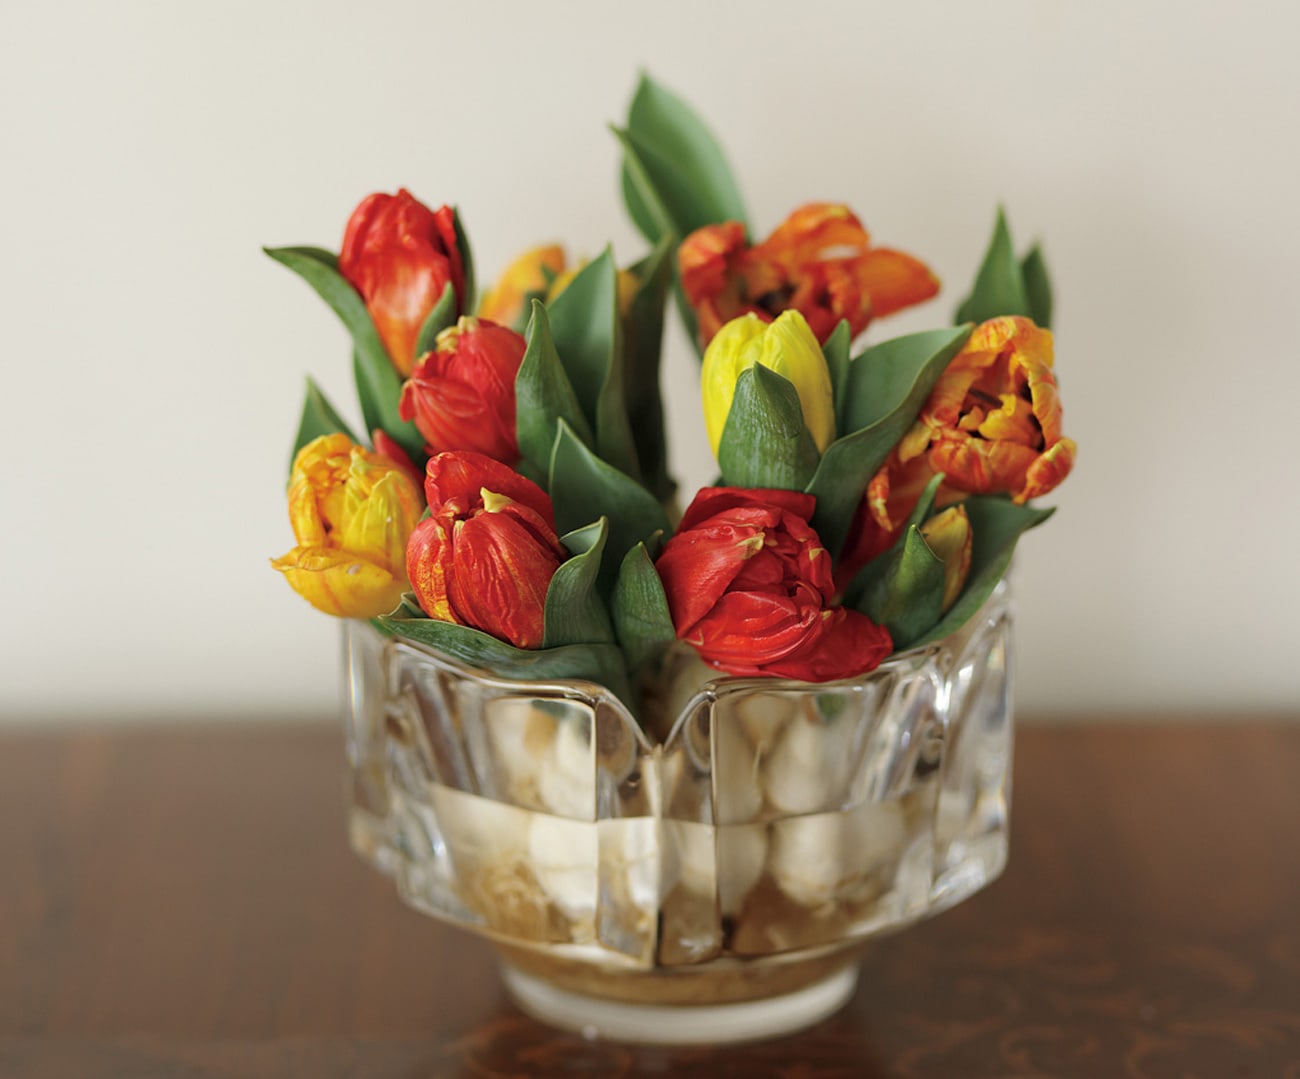 生けるのは花瓶だけ、でなくていい。ホルトハウス房子さんの自由に美しく花を飾る方法。